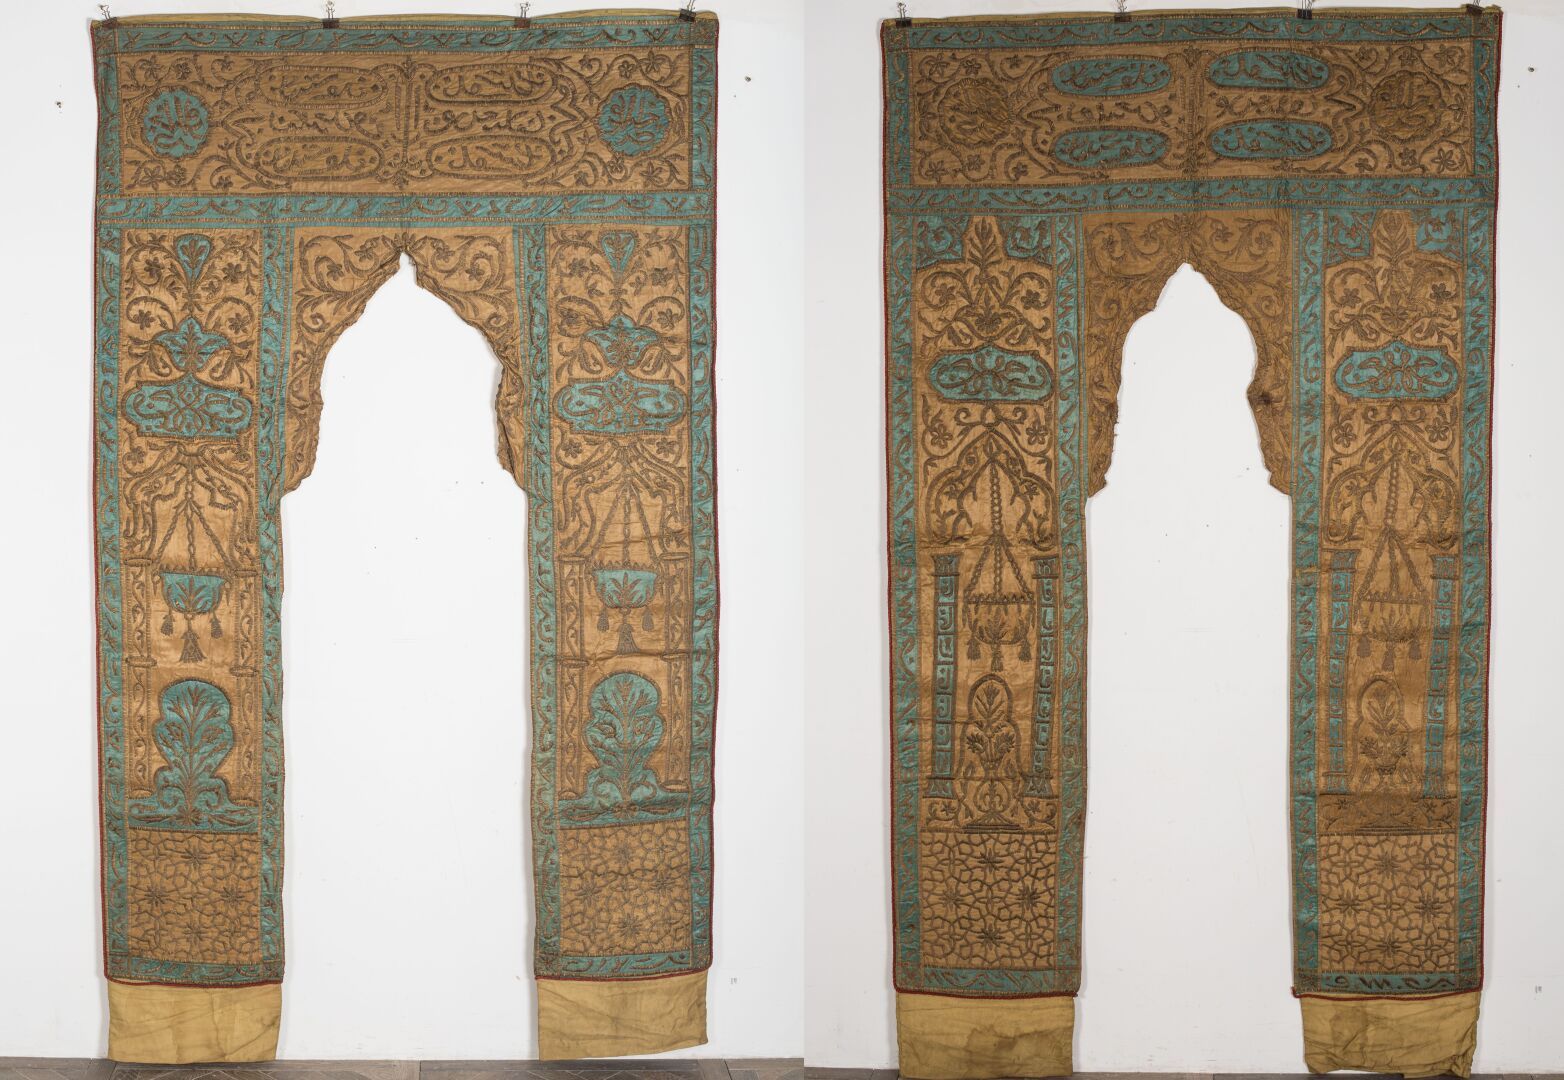 Null 一对奥特曼的门。

绣花缎子和金属线。

土耳其，奥斯曼帝国，约1900年。

高272厘米，宽170厘米，无衬里，有污渍，有小事故